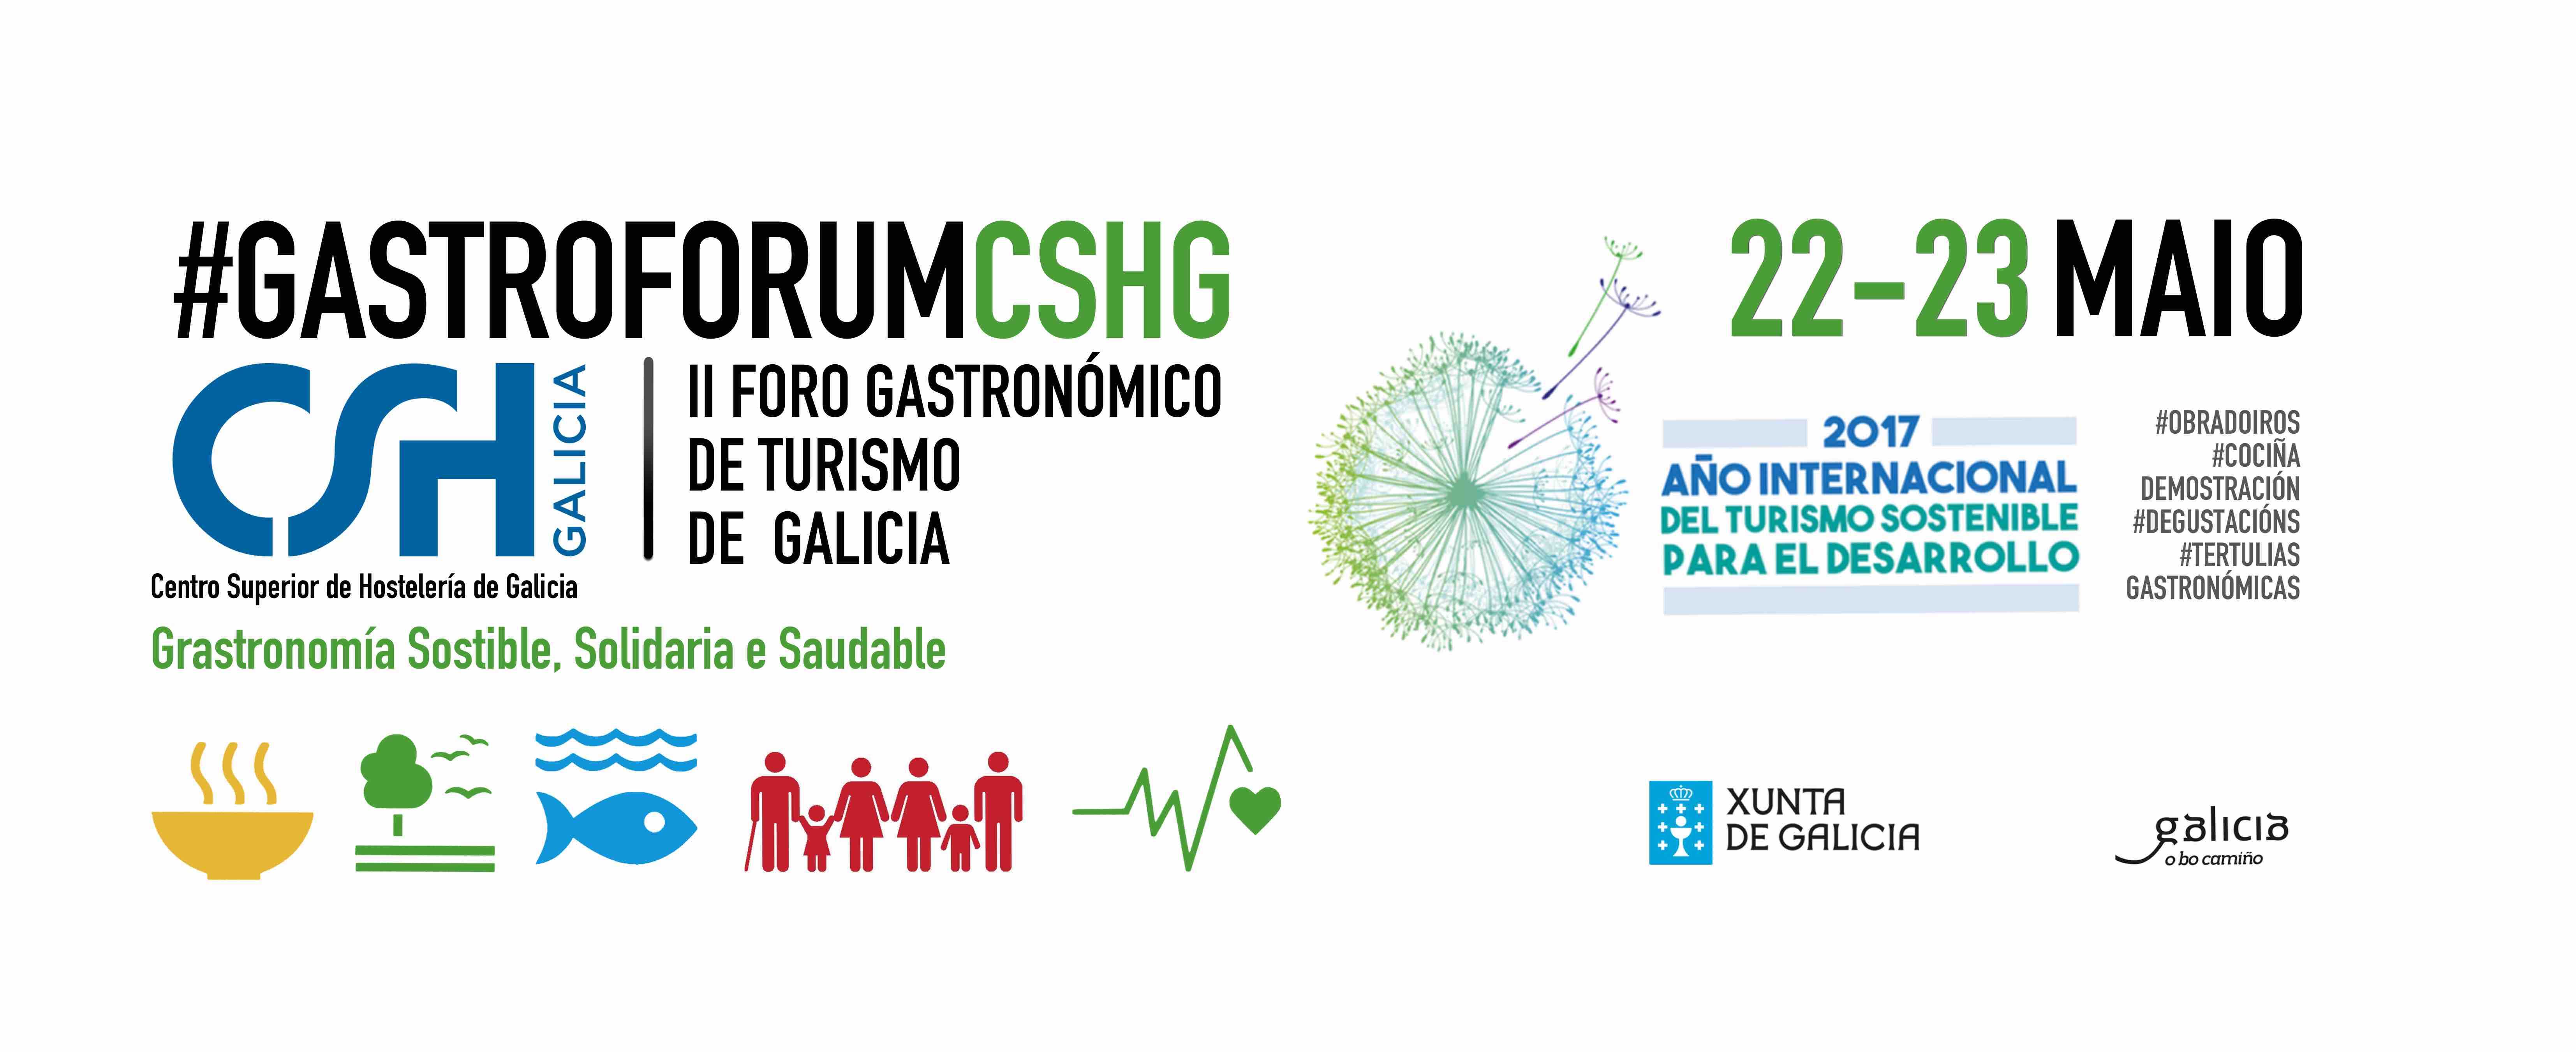 Gastroforum CSHG: II Foro gastronómico de Turismo de Galicia